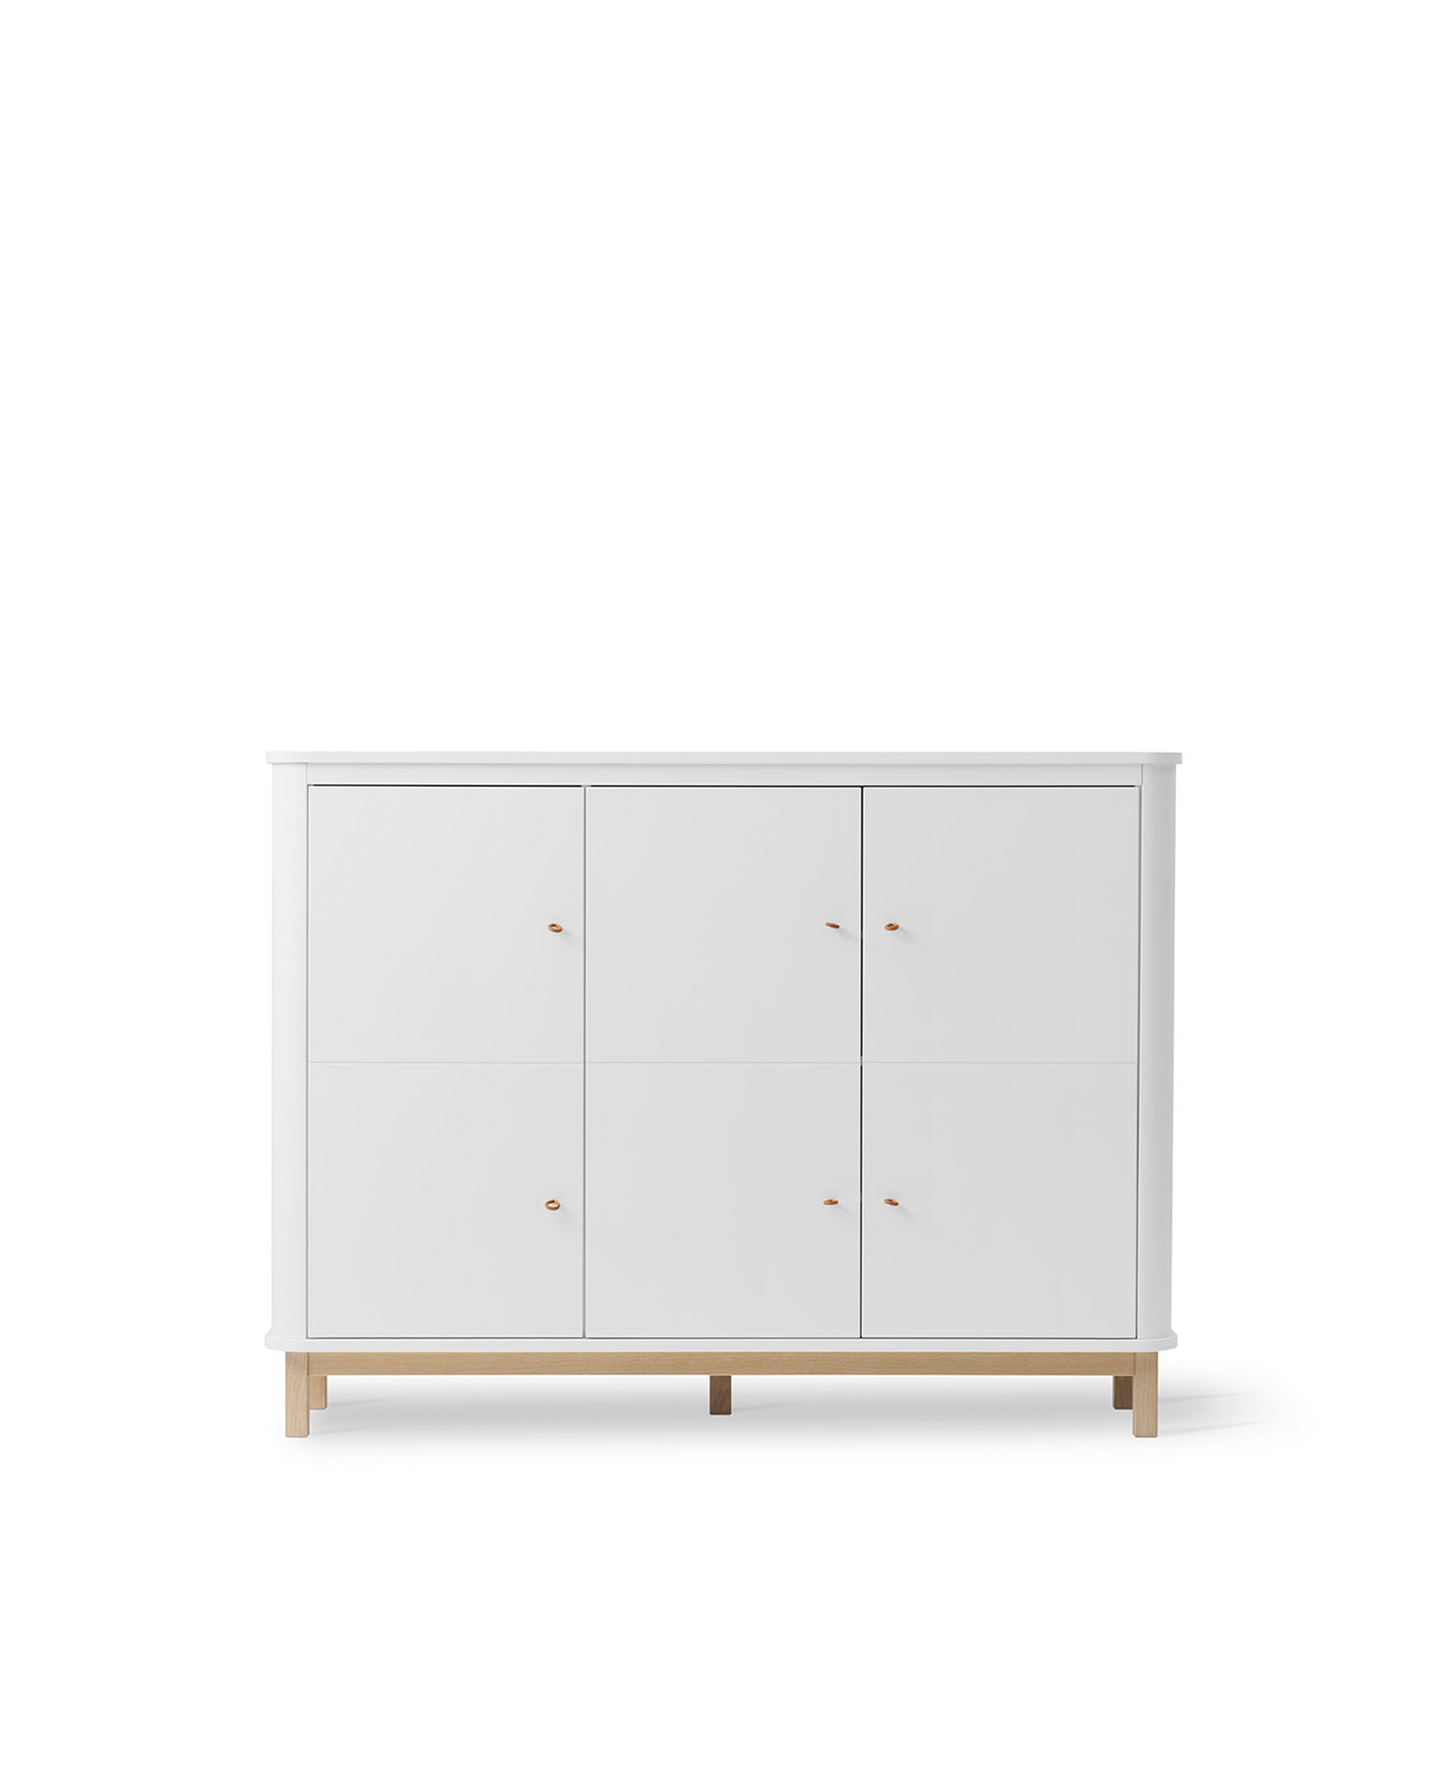 Multi Cupboard 3 Doors White Oak - Oliver Furniture